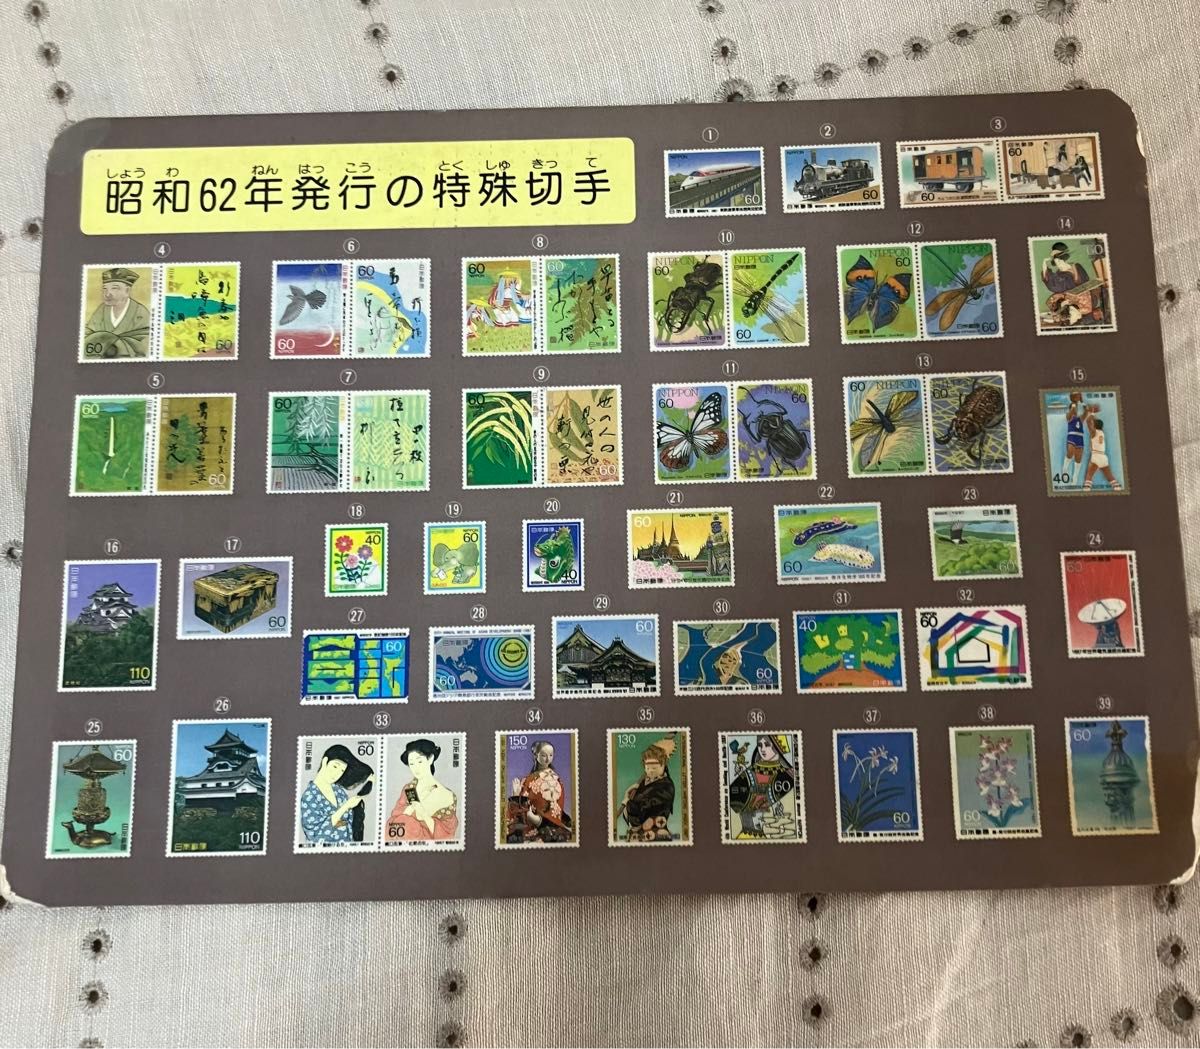 昭和62年度発行の特殊切手をデザインした下敷き